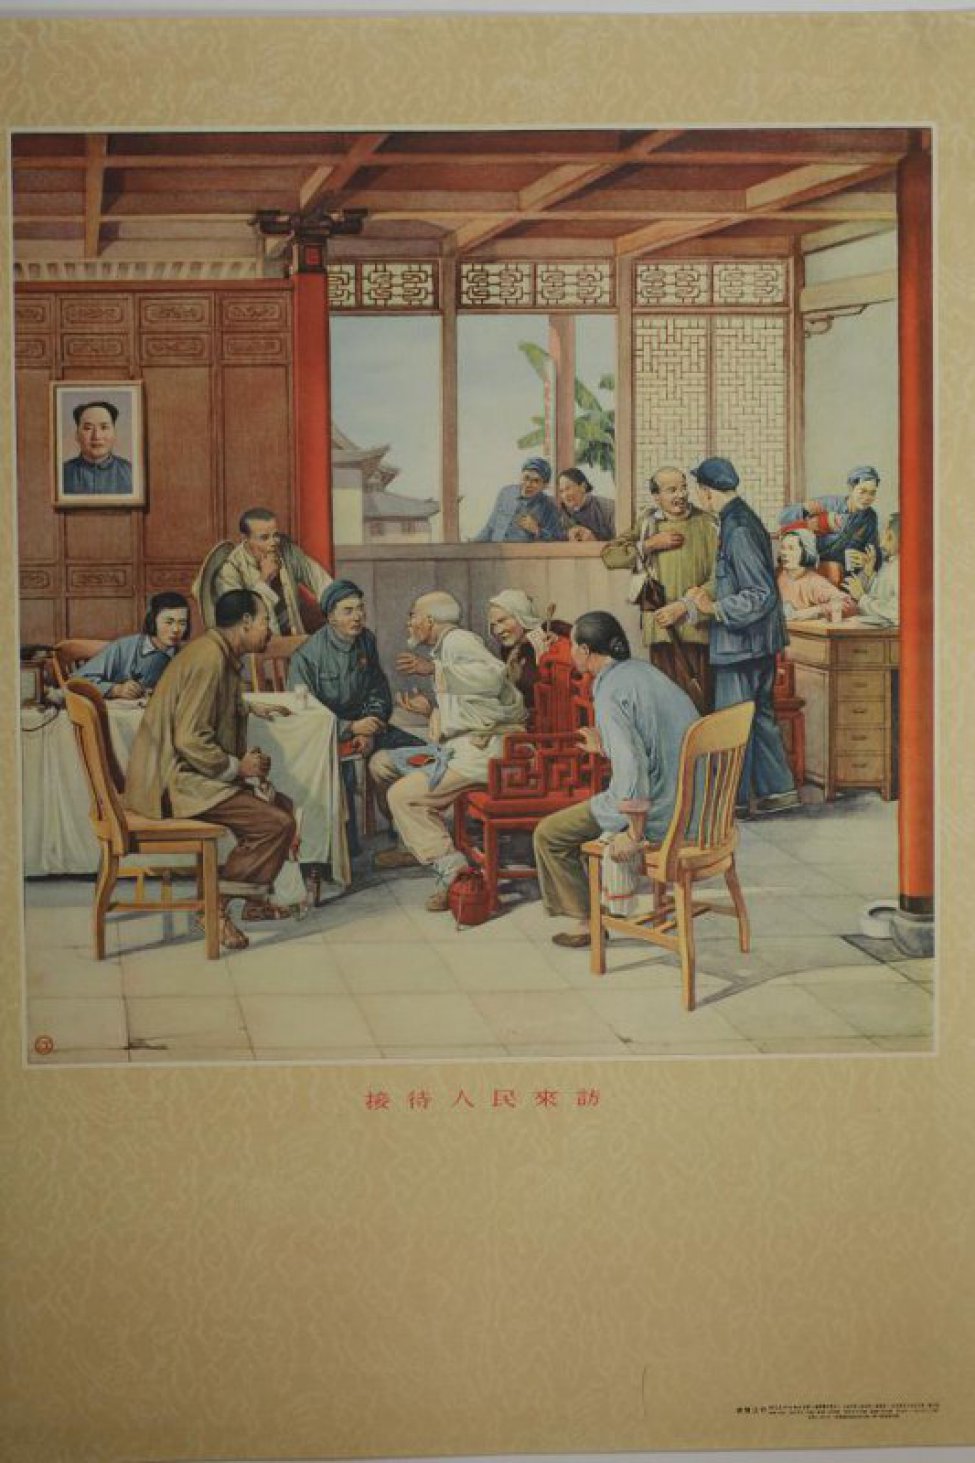 Изображена часть комнаты, в центре - окно, в которое  заглядывают мужчина и женщина . Слева ( от зрителя ) на стене Мао Цзе- дуна. У стены стол,  покрытый скатертью . За столом и около стола  сидят и стоят четыре женщины и восемь мужчин.